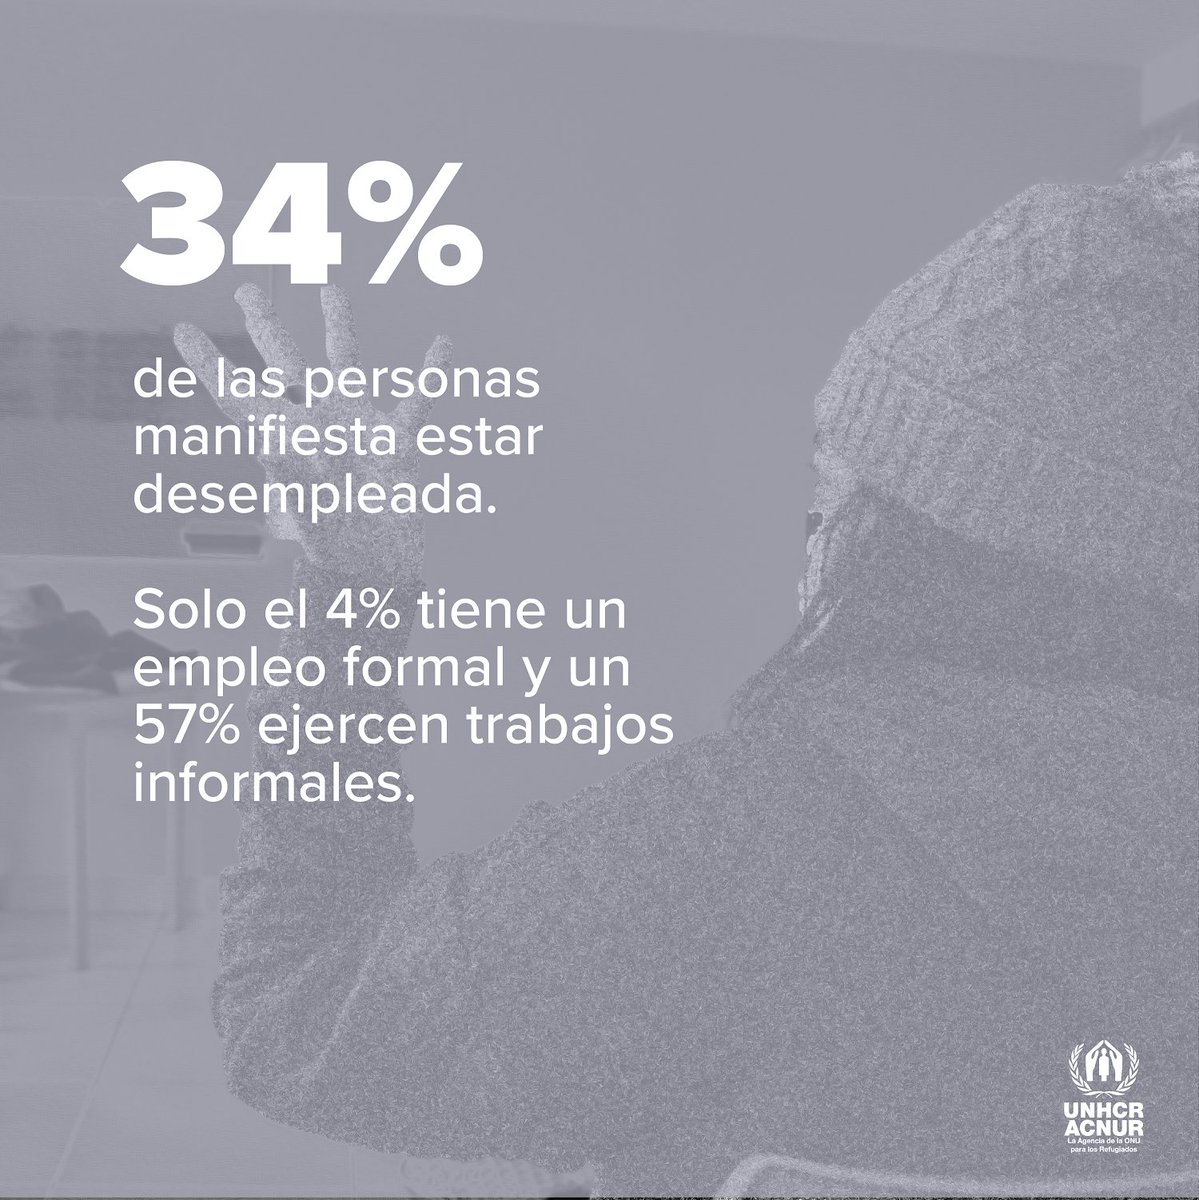 La inclusión laboral es clave para que las personas refugiadas puedan aportar sus conocimientos y habilidades al desarrollo de sus países de acogida. En #Quito, solo el 4% de las personas en movilidad tiene empleo formal. Conoce más en nuestro reporte: bit.ly/MonitoreoQuito